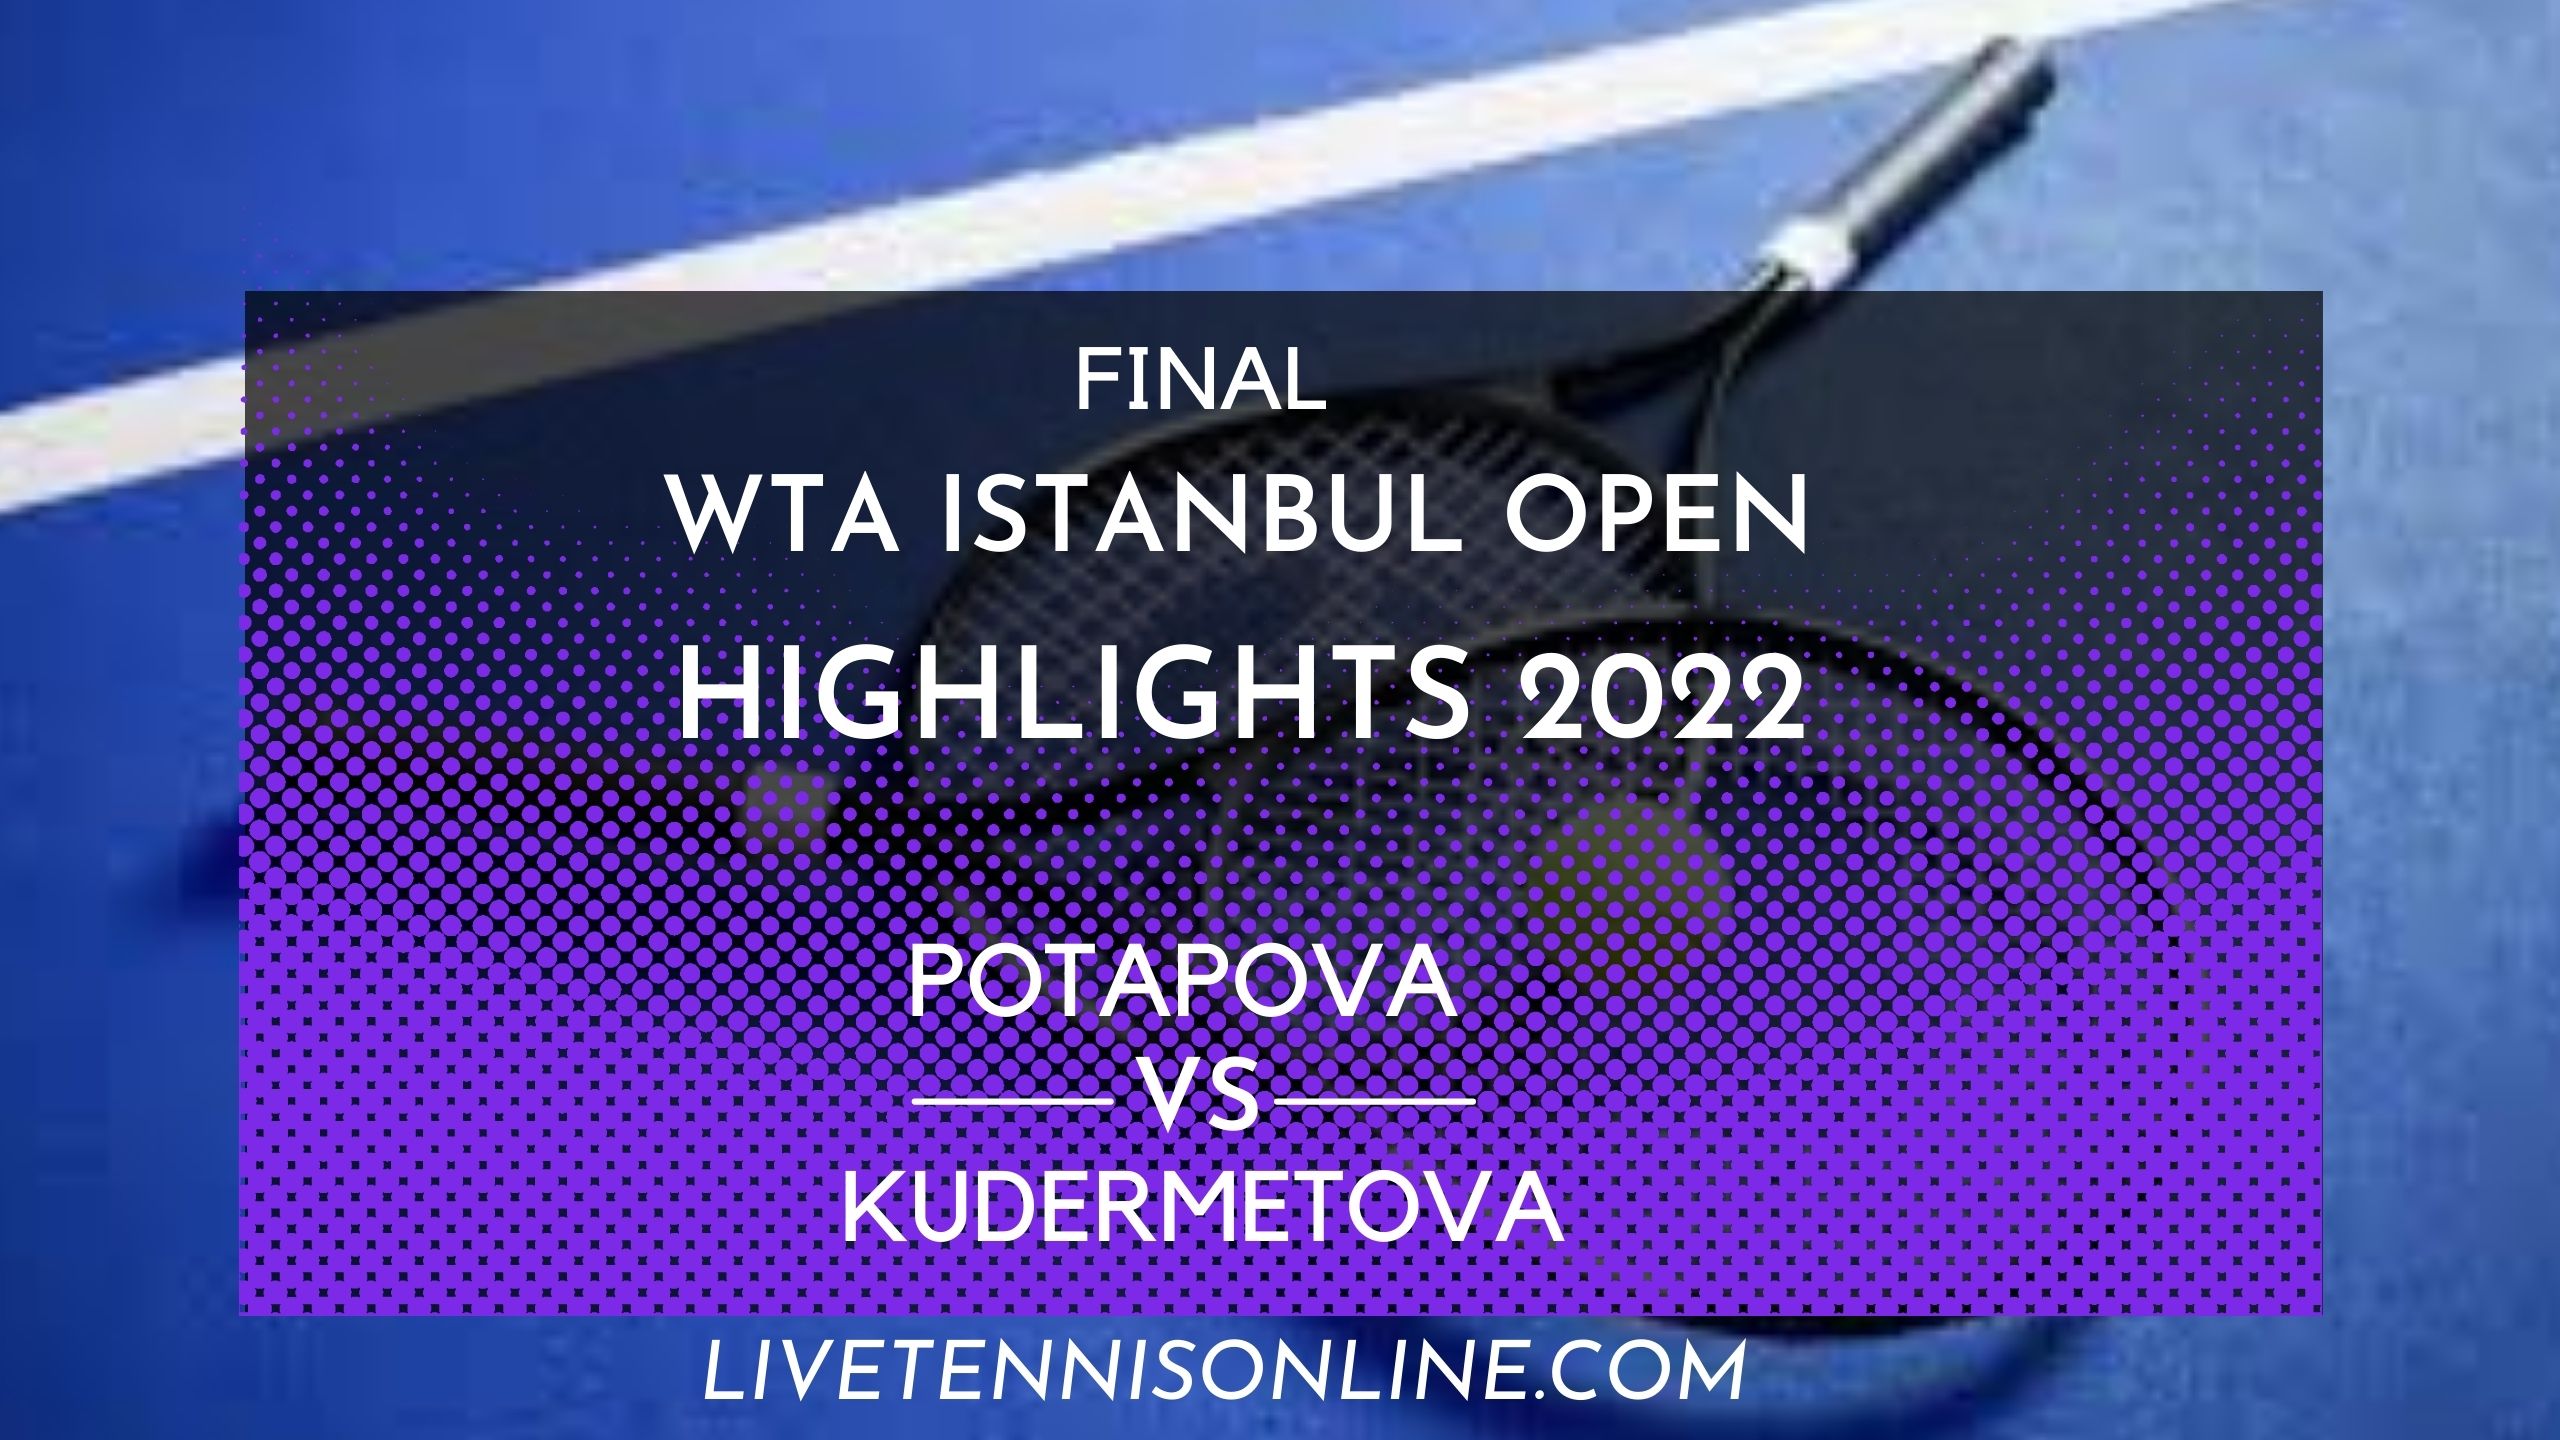 Potapova Vs Kudermetova Final Highlights 2022